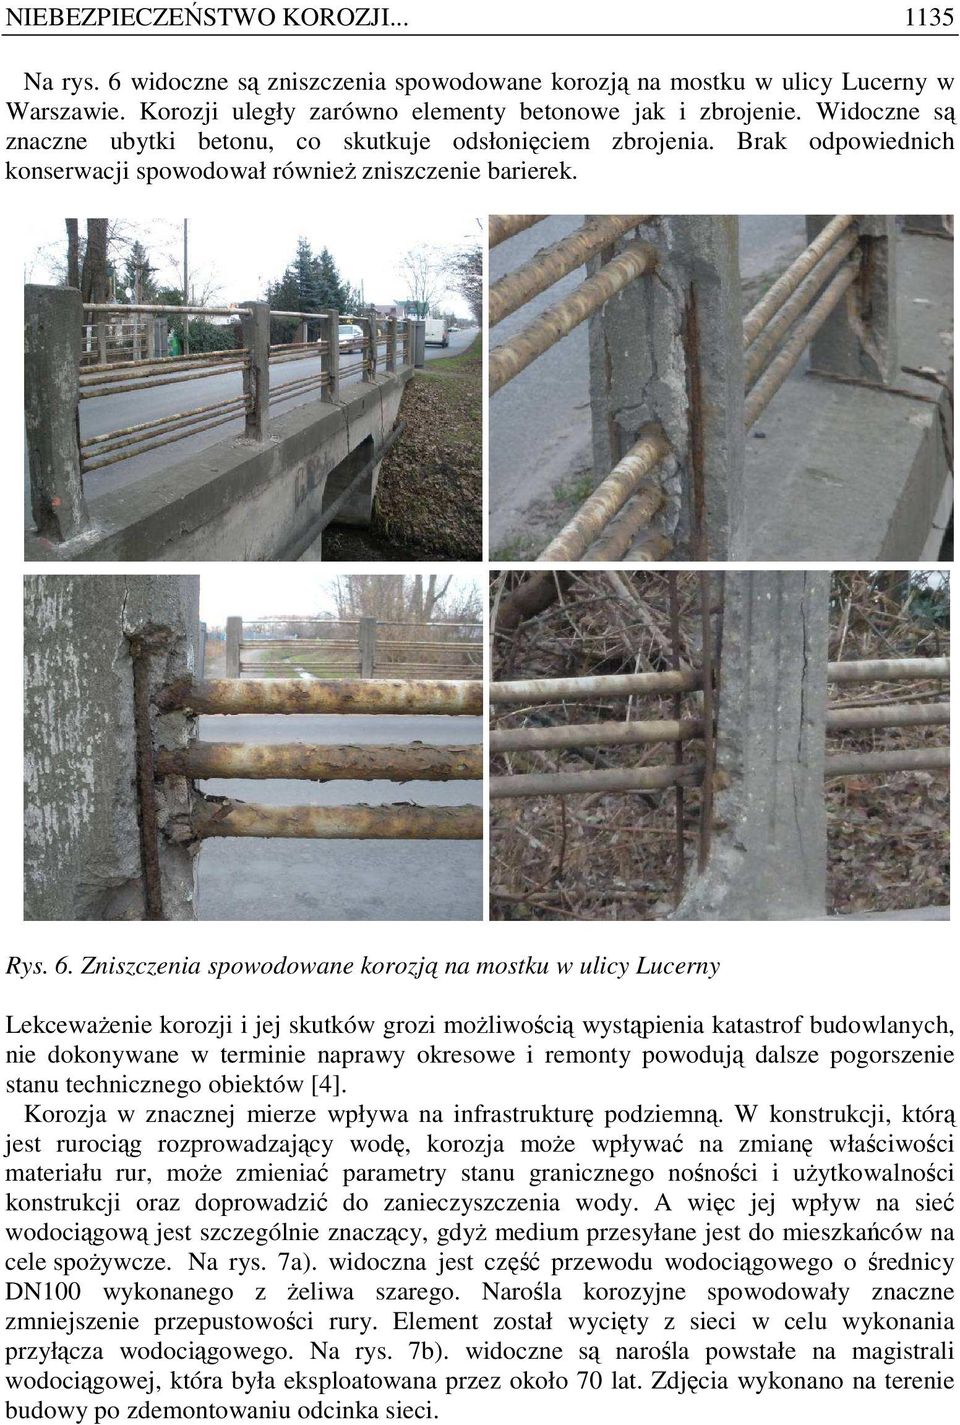 Zniszczenia spowodowane korozją na mostku w ulicy Lucerny LekcewaŜenie korozji i jej skutków grozi moŝliwością wystąpienia katastrof budowlanych, nie dokonywane w terminie naprawy okresowe i remonty